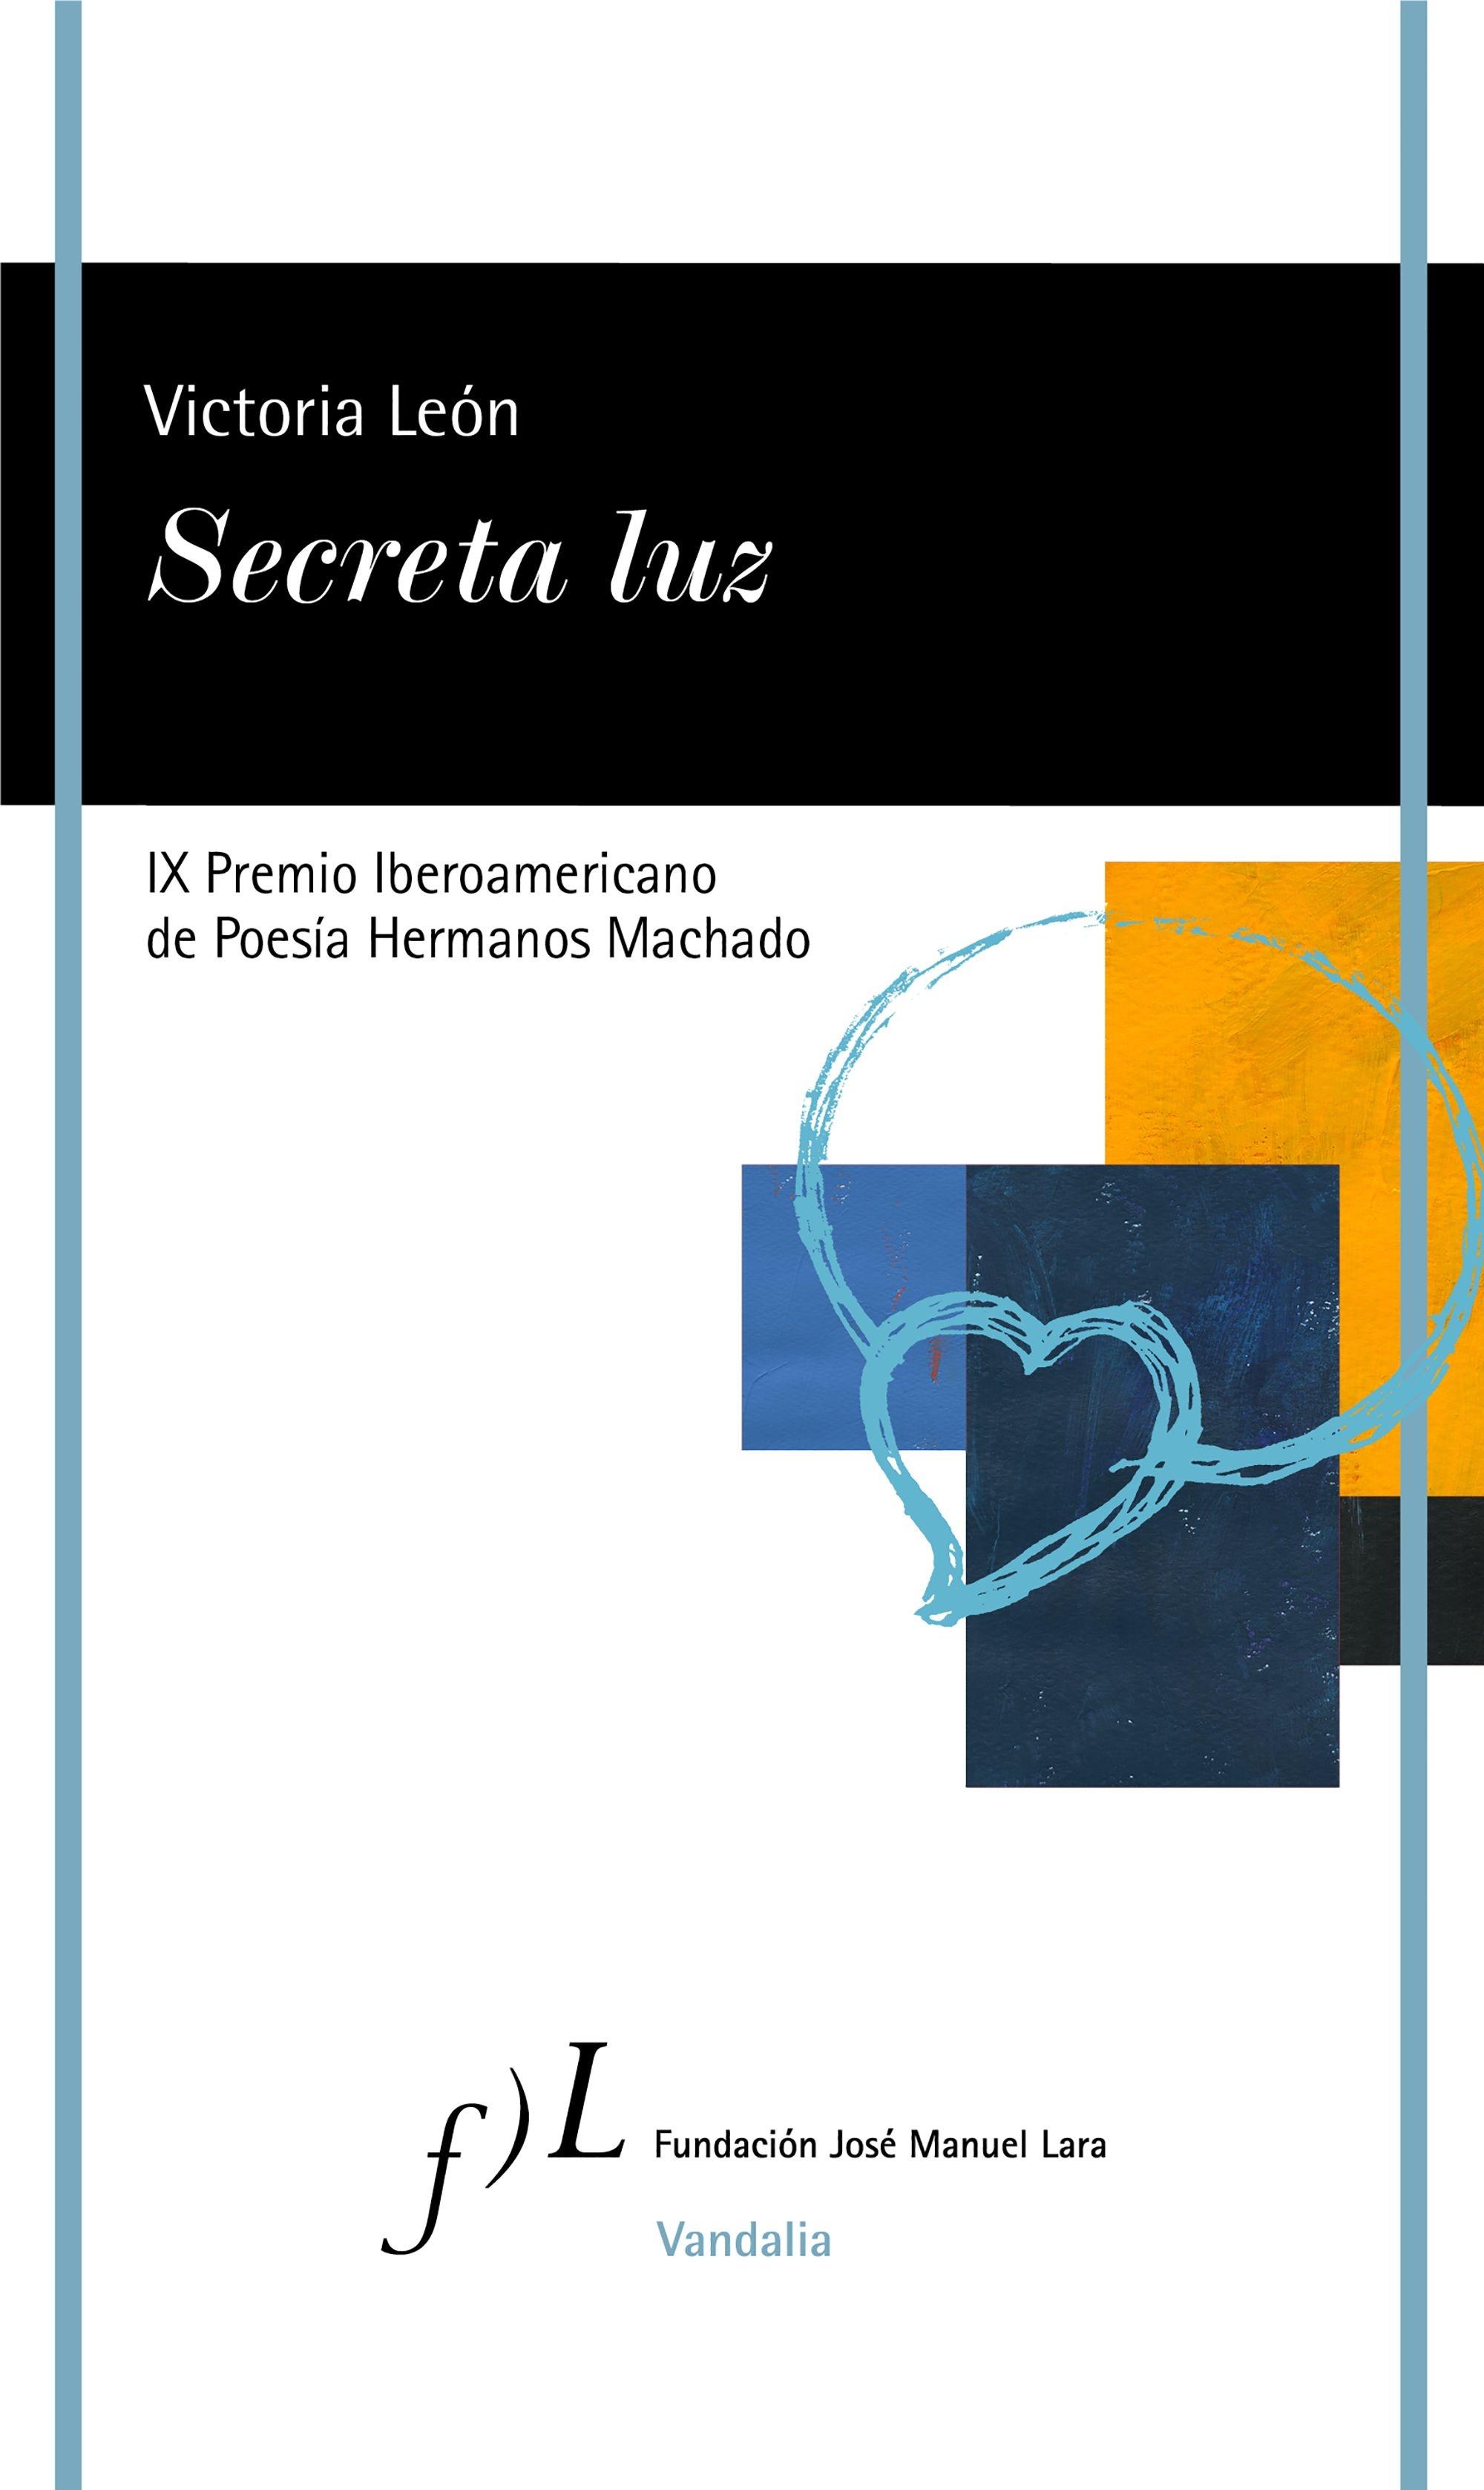 Secreta Luz "Ix Premio Iberoamericano de Poesía Hermanos Machado"